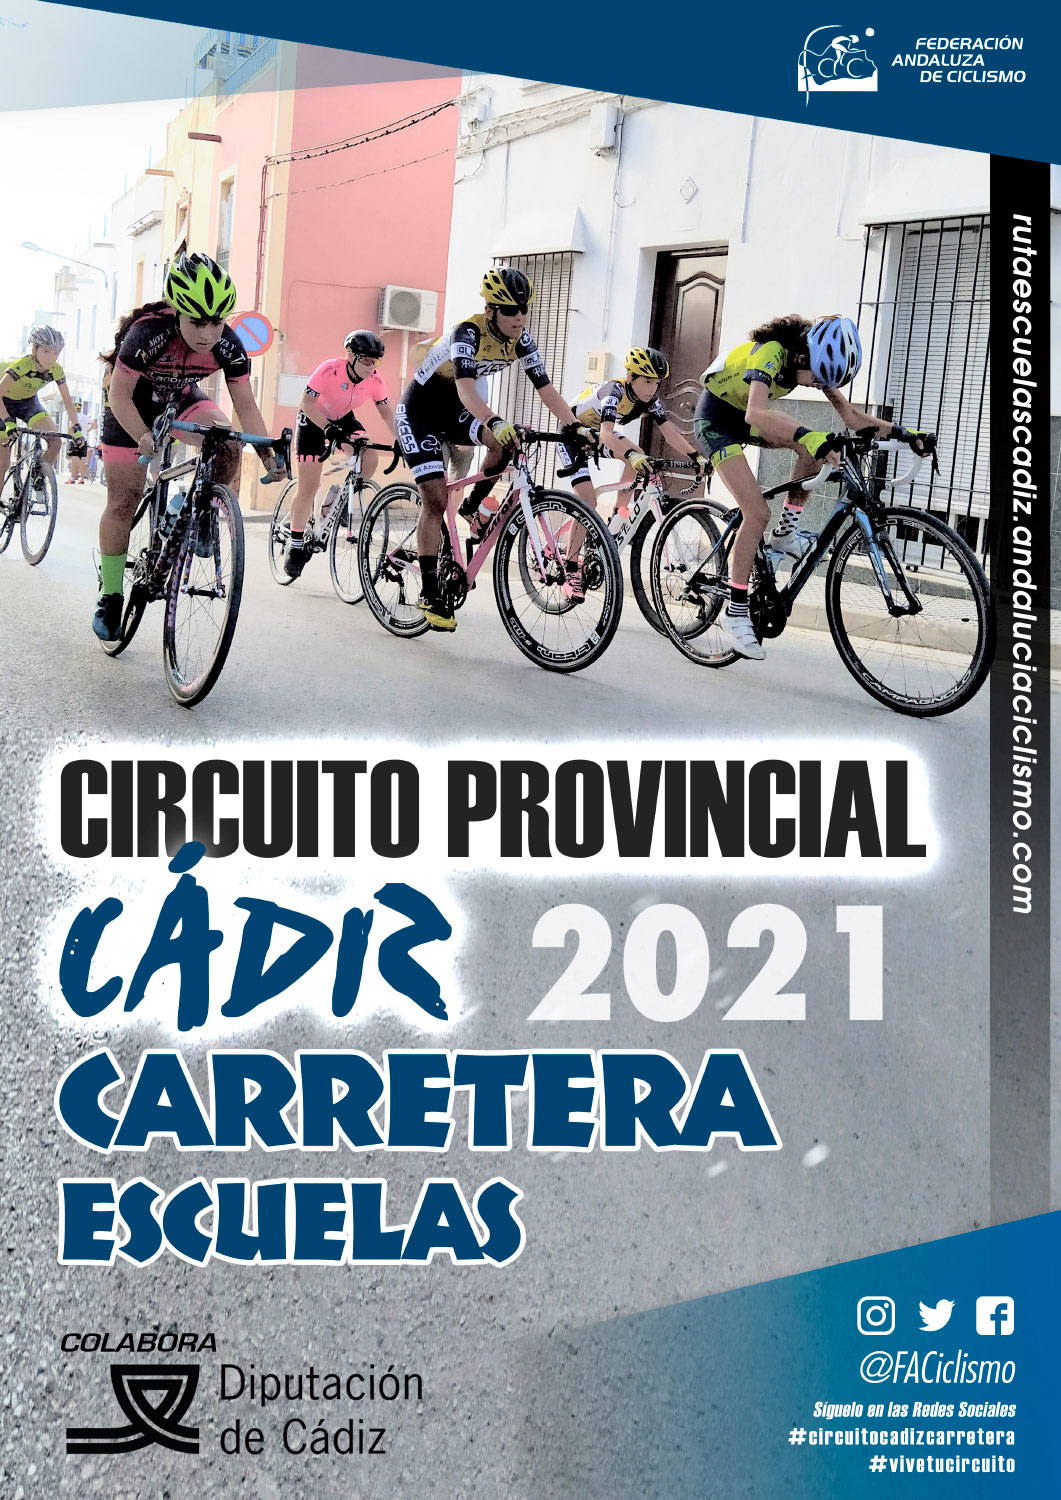 La Clásica de Algeciras coge el relevo en el Circuito Provincial Cádiz Carretera 2021